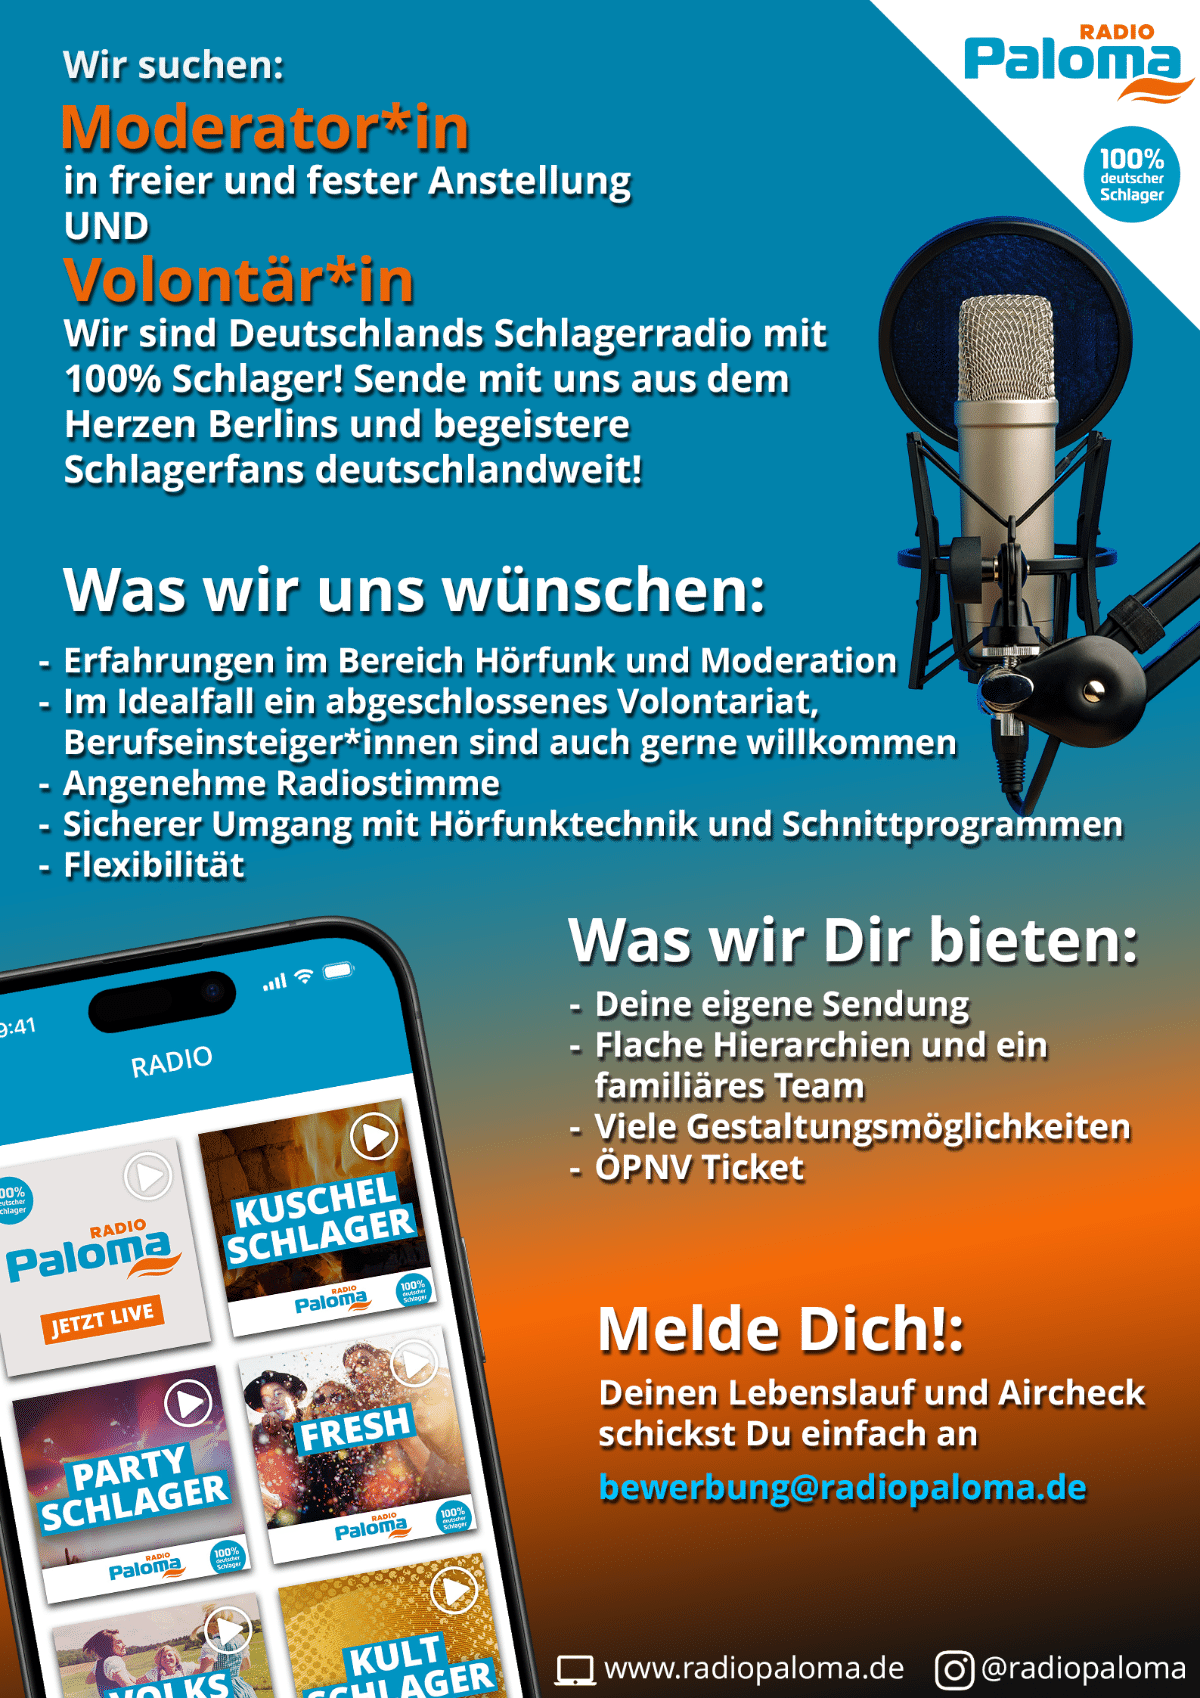 Radio Paloma sucht eine*n Moderator*in in freier und fester Anstellung und eine*n Volontär*in am Standort Berlin.